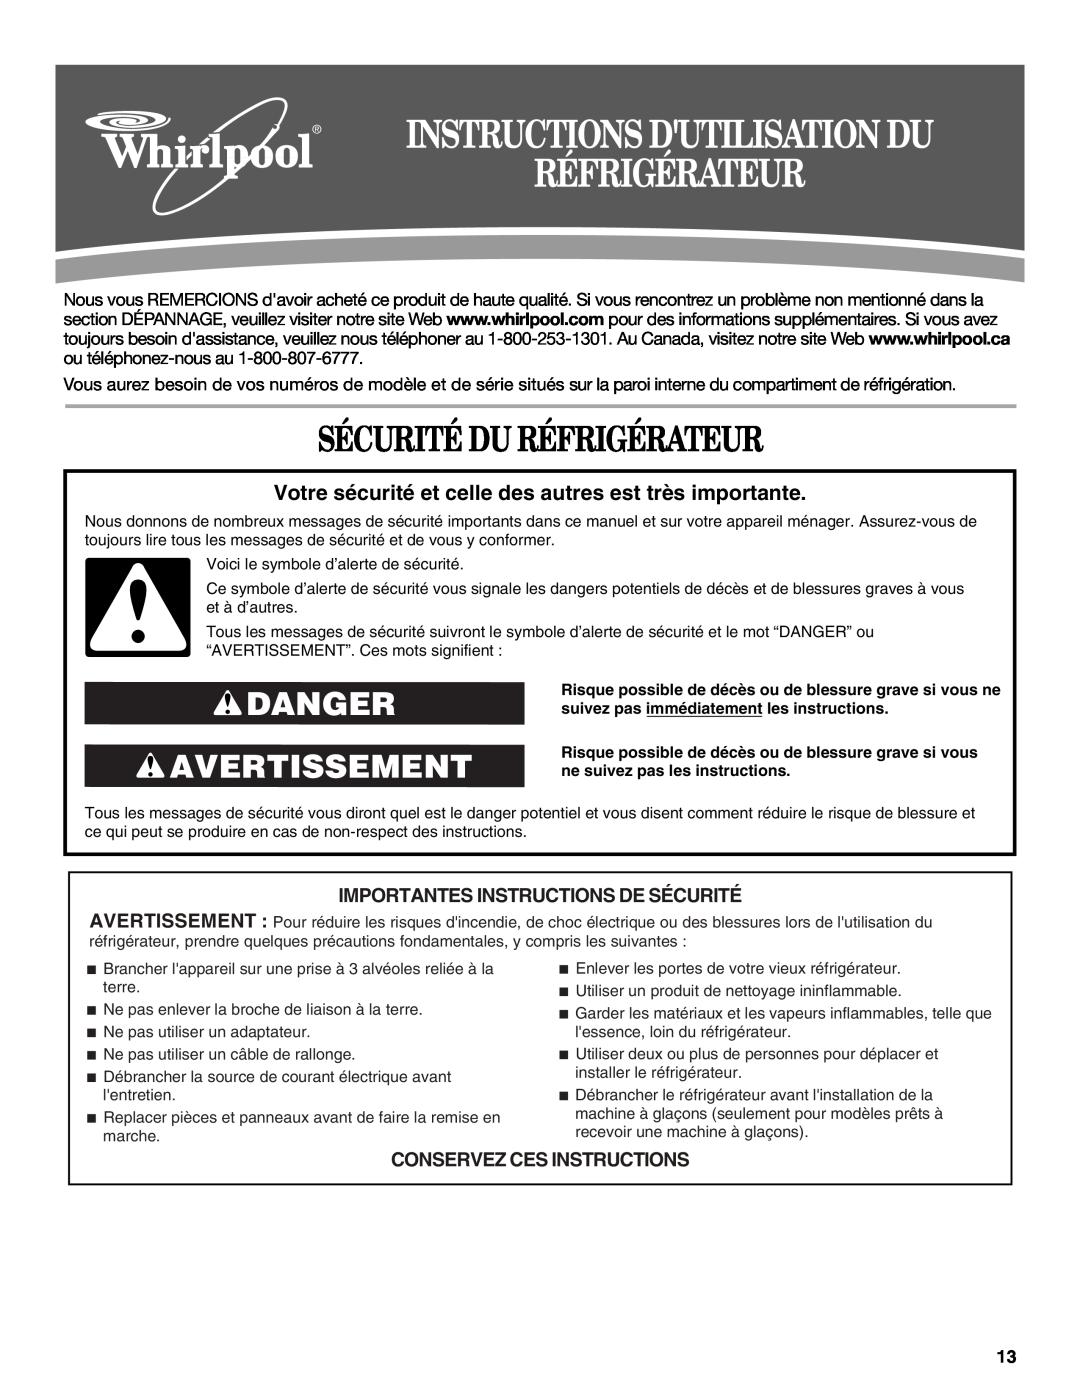 Whirlpool W10208840A, W10208839A Sécurité Du Réfrigérateur, Danger Avertissement, Importantes Instructions De Sécurité 